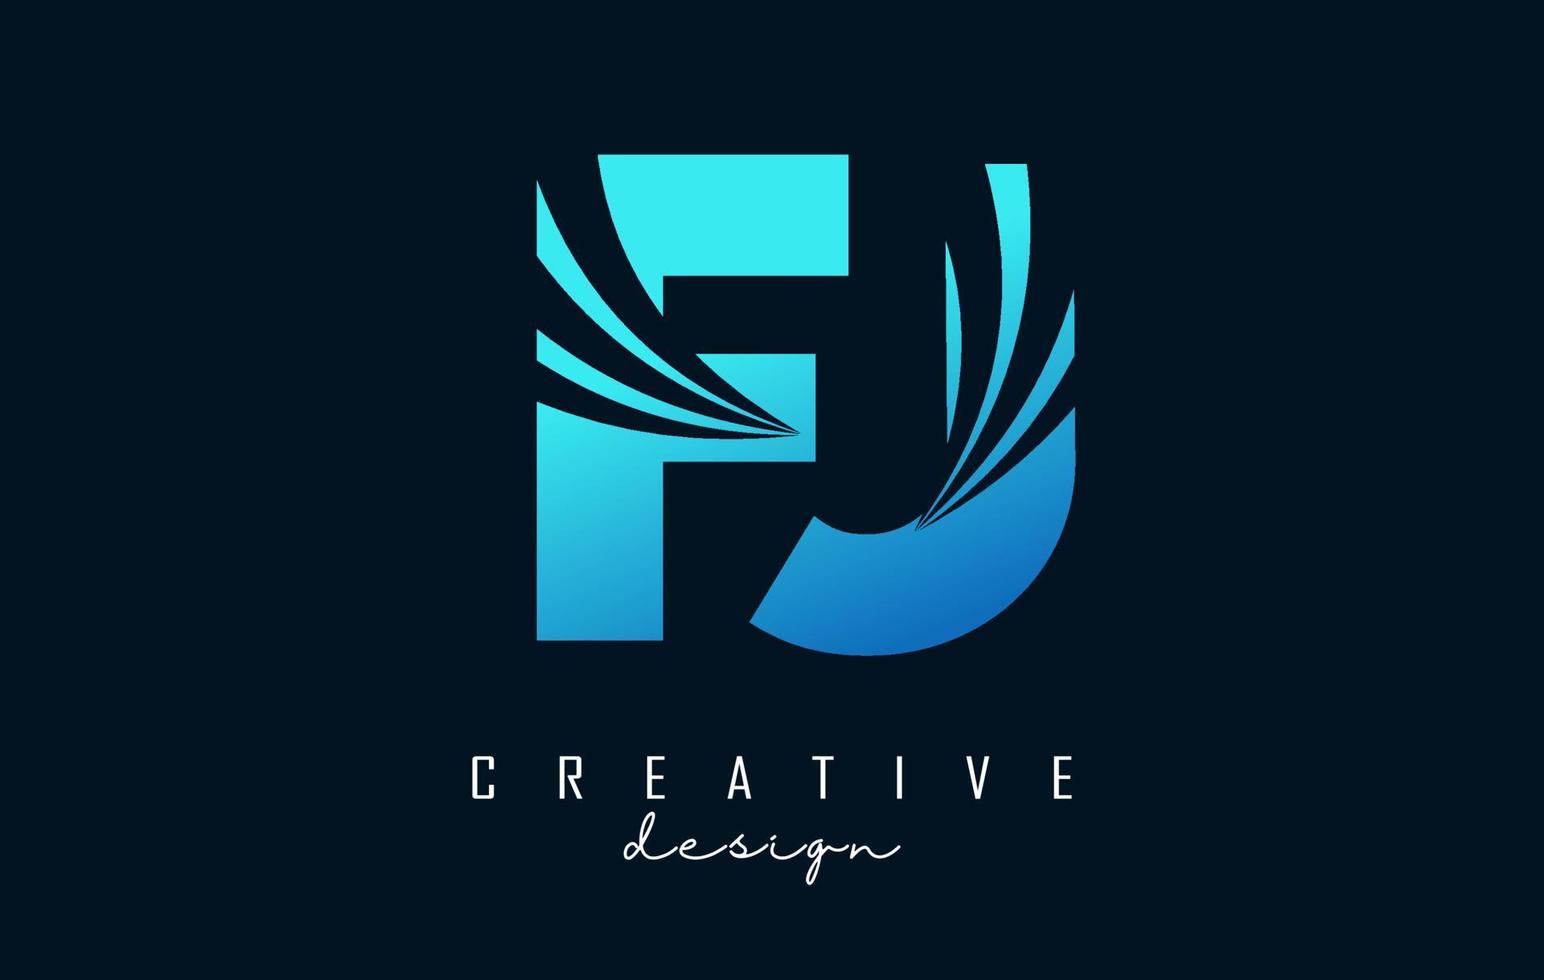 Logotipo creativo de letras azules fj fj con líneas principales y diseño de concepto de carretera. letras con diseño geométrico. vector